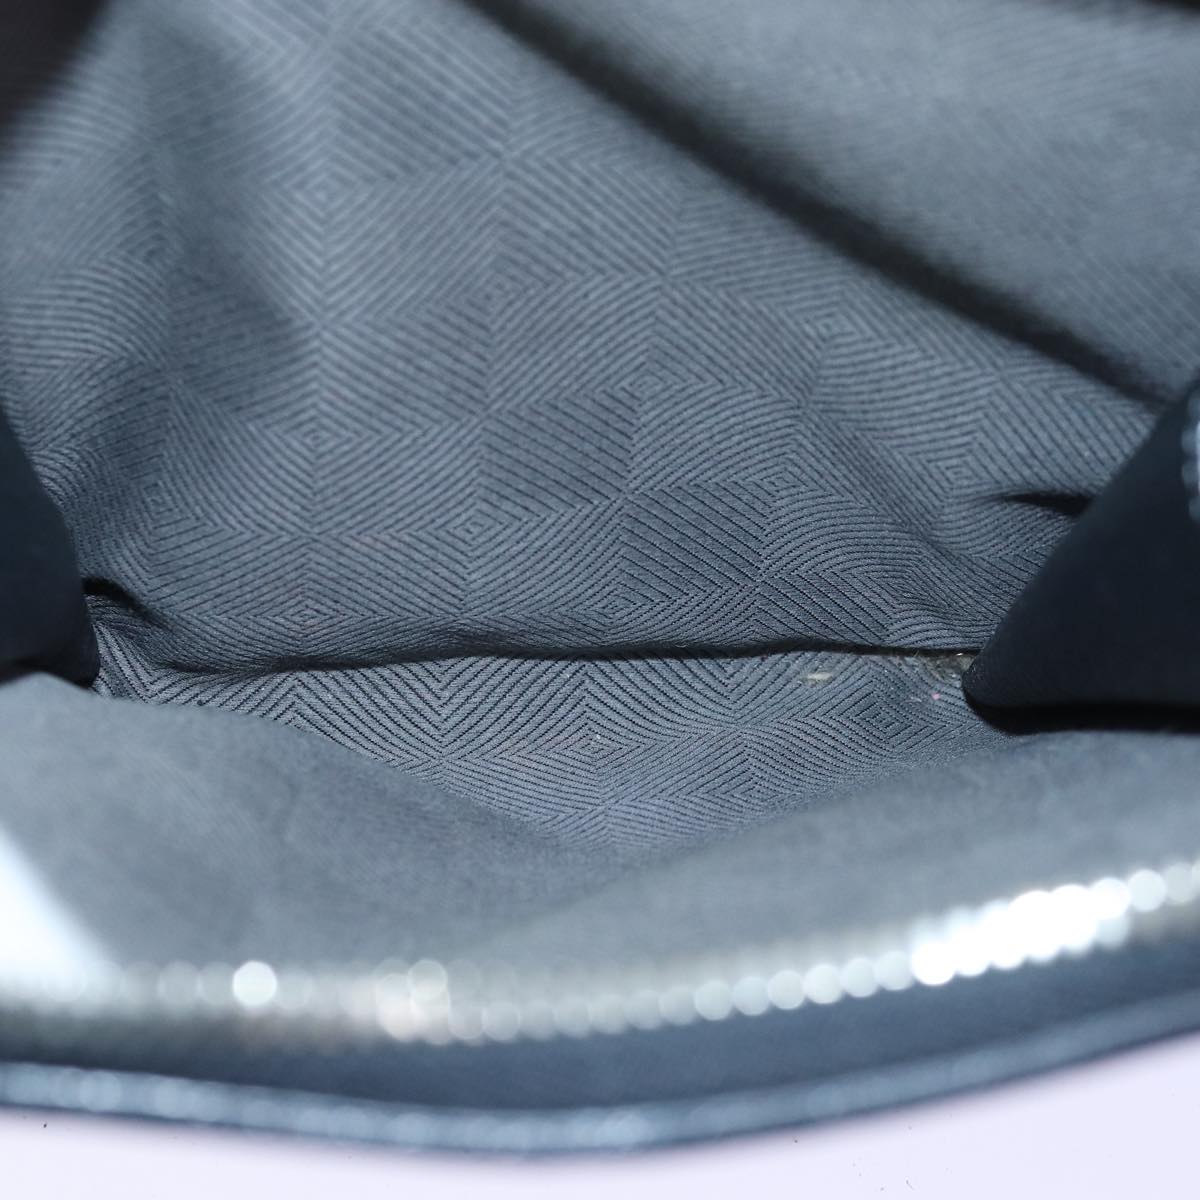 LOUIS VUITTON Naxos Shoulder Bag Leather Black LV Auth yk12249